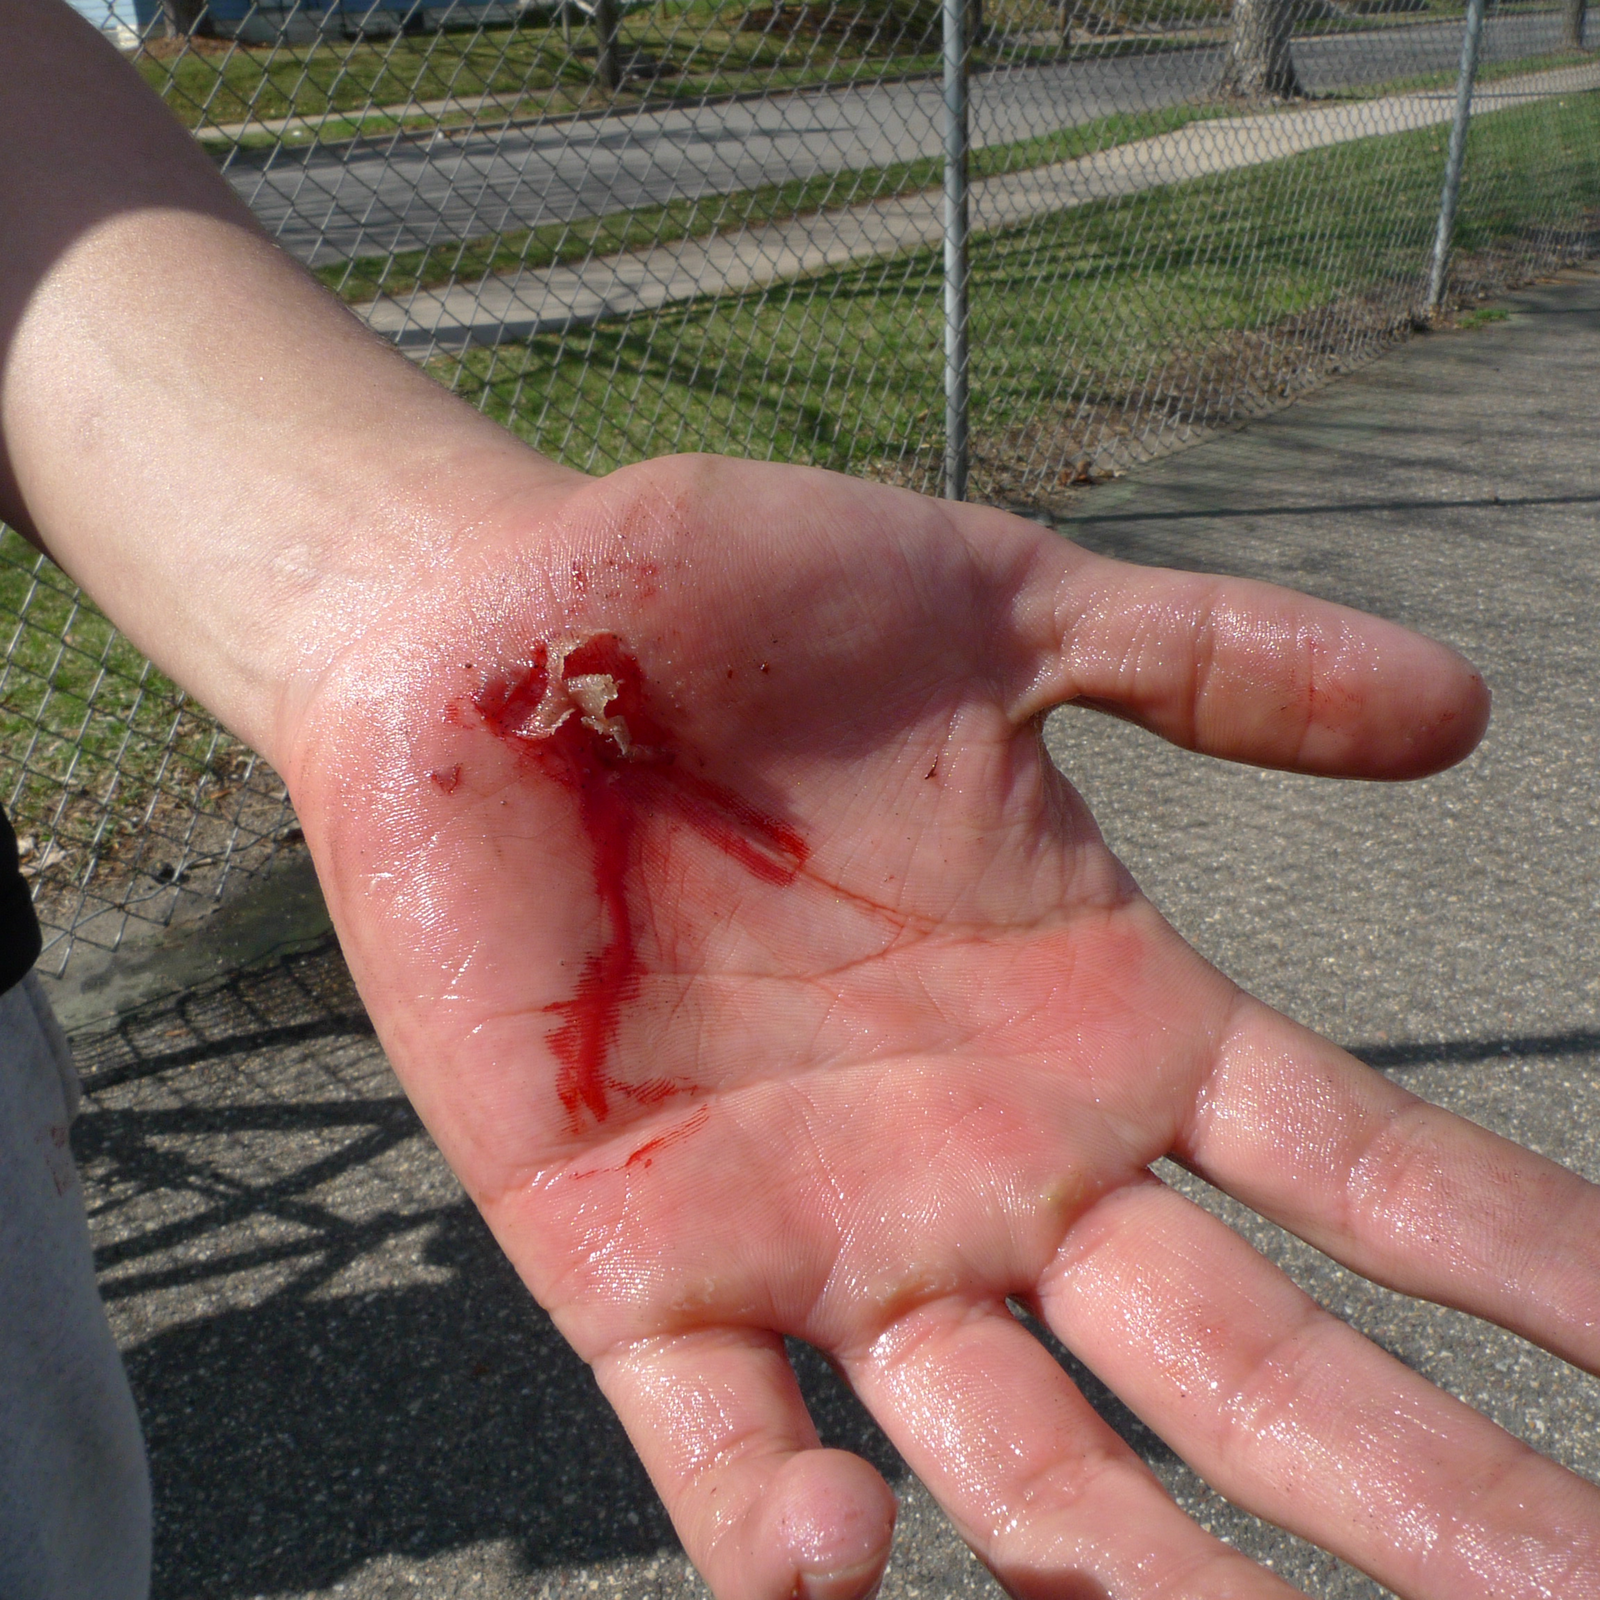 Galeria siedmiu zdjęć prezentujących różne rodzaje ran. Zdjęcie numer trzy przedstawia ranę szarpaną. Zbliżenie na otwartą lewą dłoń. Zranienie znajduje się blisko nadgarstka, poniżej kciuka na samym środku dolnej części dłoni. Z rany wypływa krew, widoczne kawałki zwisającej skóry.